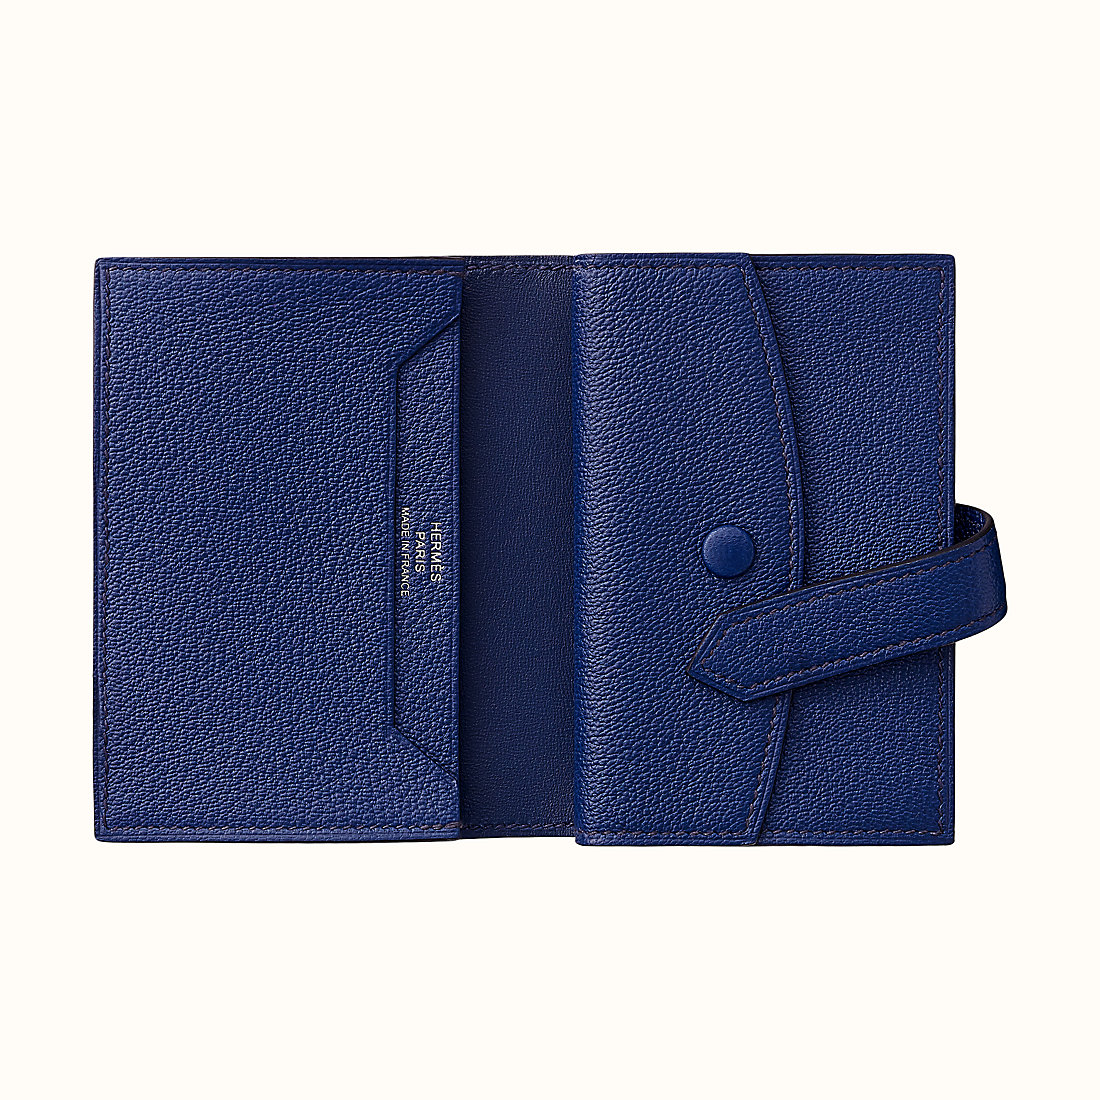 臺灣臺北市愛馬仕短錢包 Hermes Bearn mini wallet CK73 Bleu Saphir 寶石藍